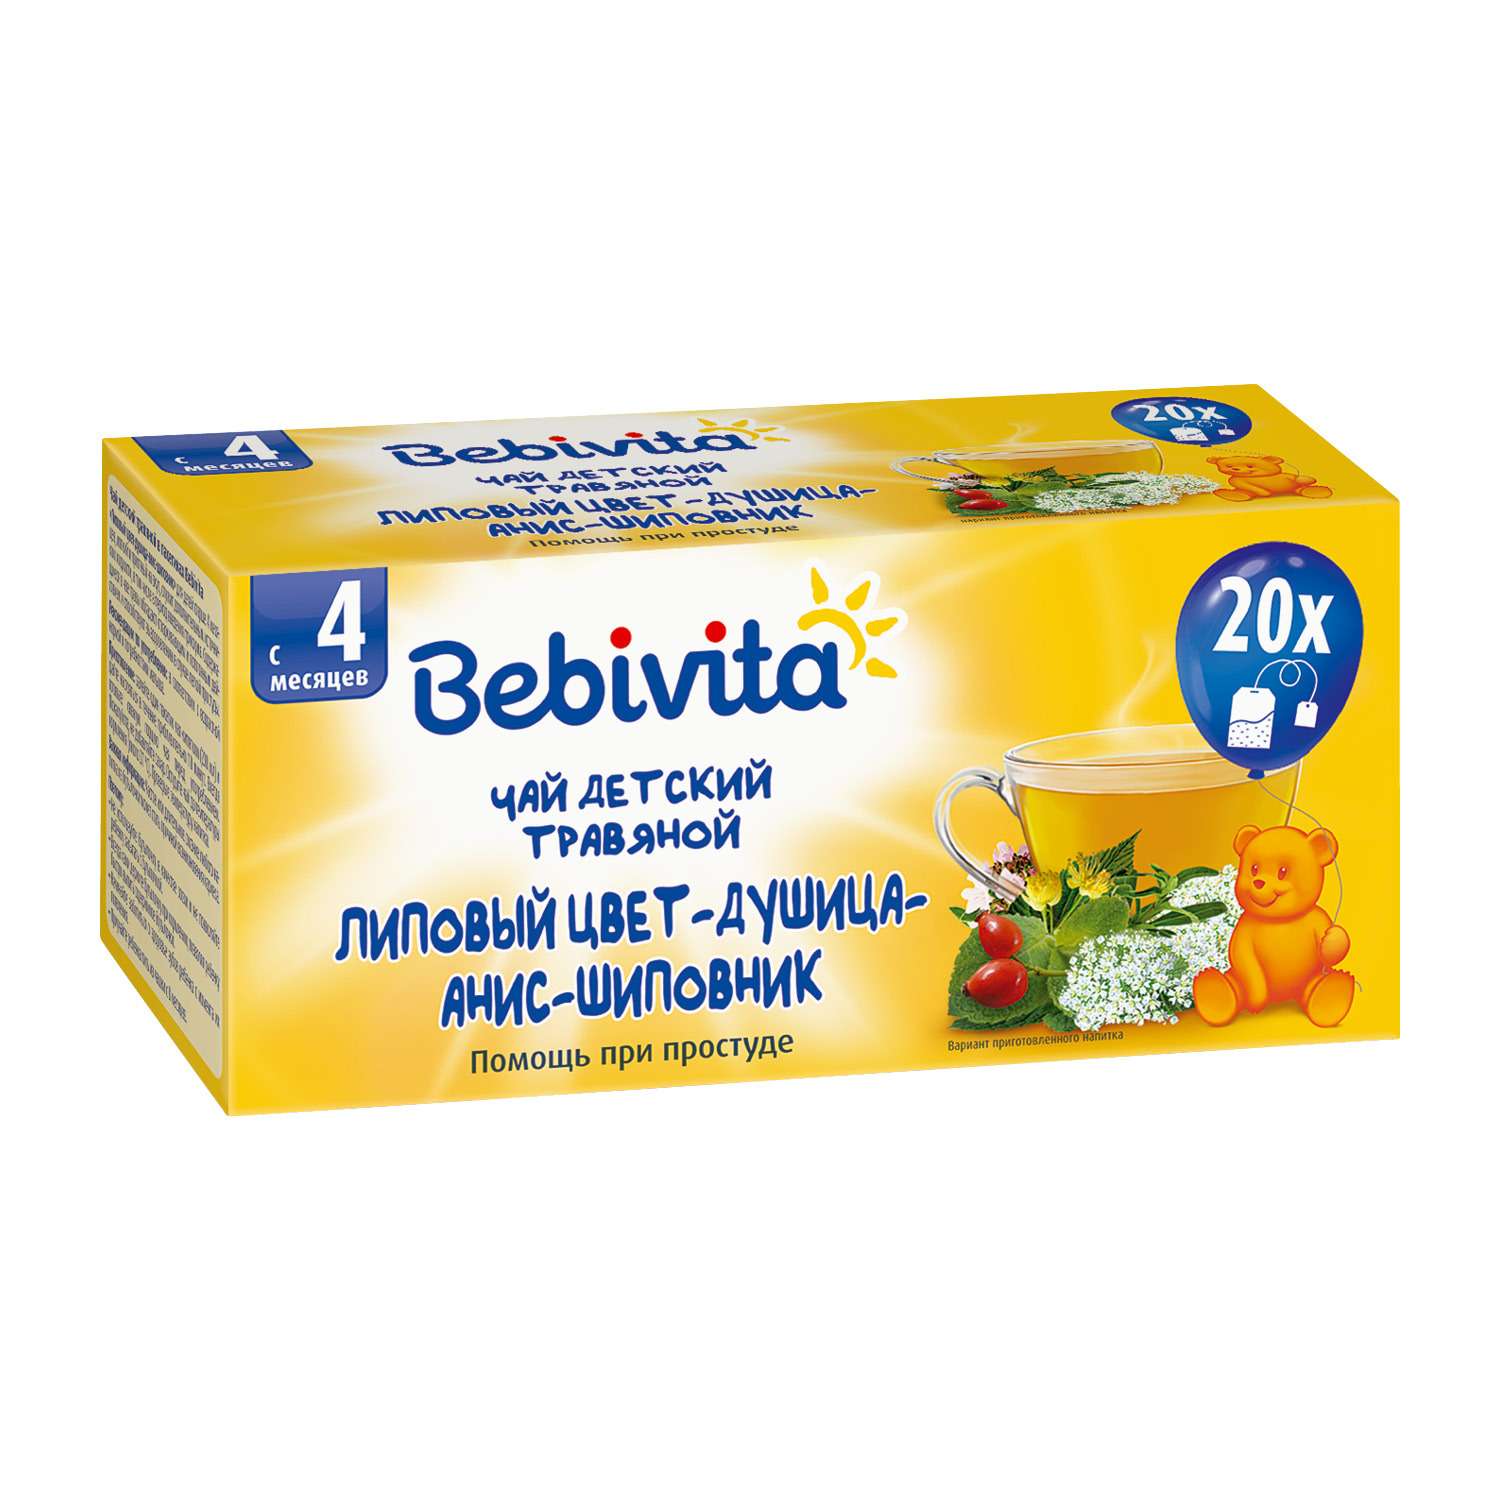 Чай Bebivita липовый цвет-душицы-анис-шиповник 20г с 4месяцев - фото 1